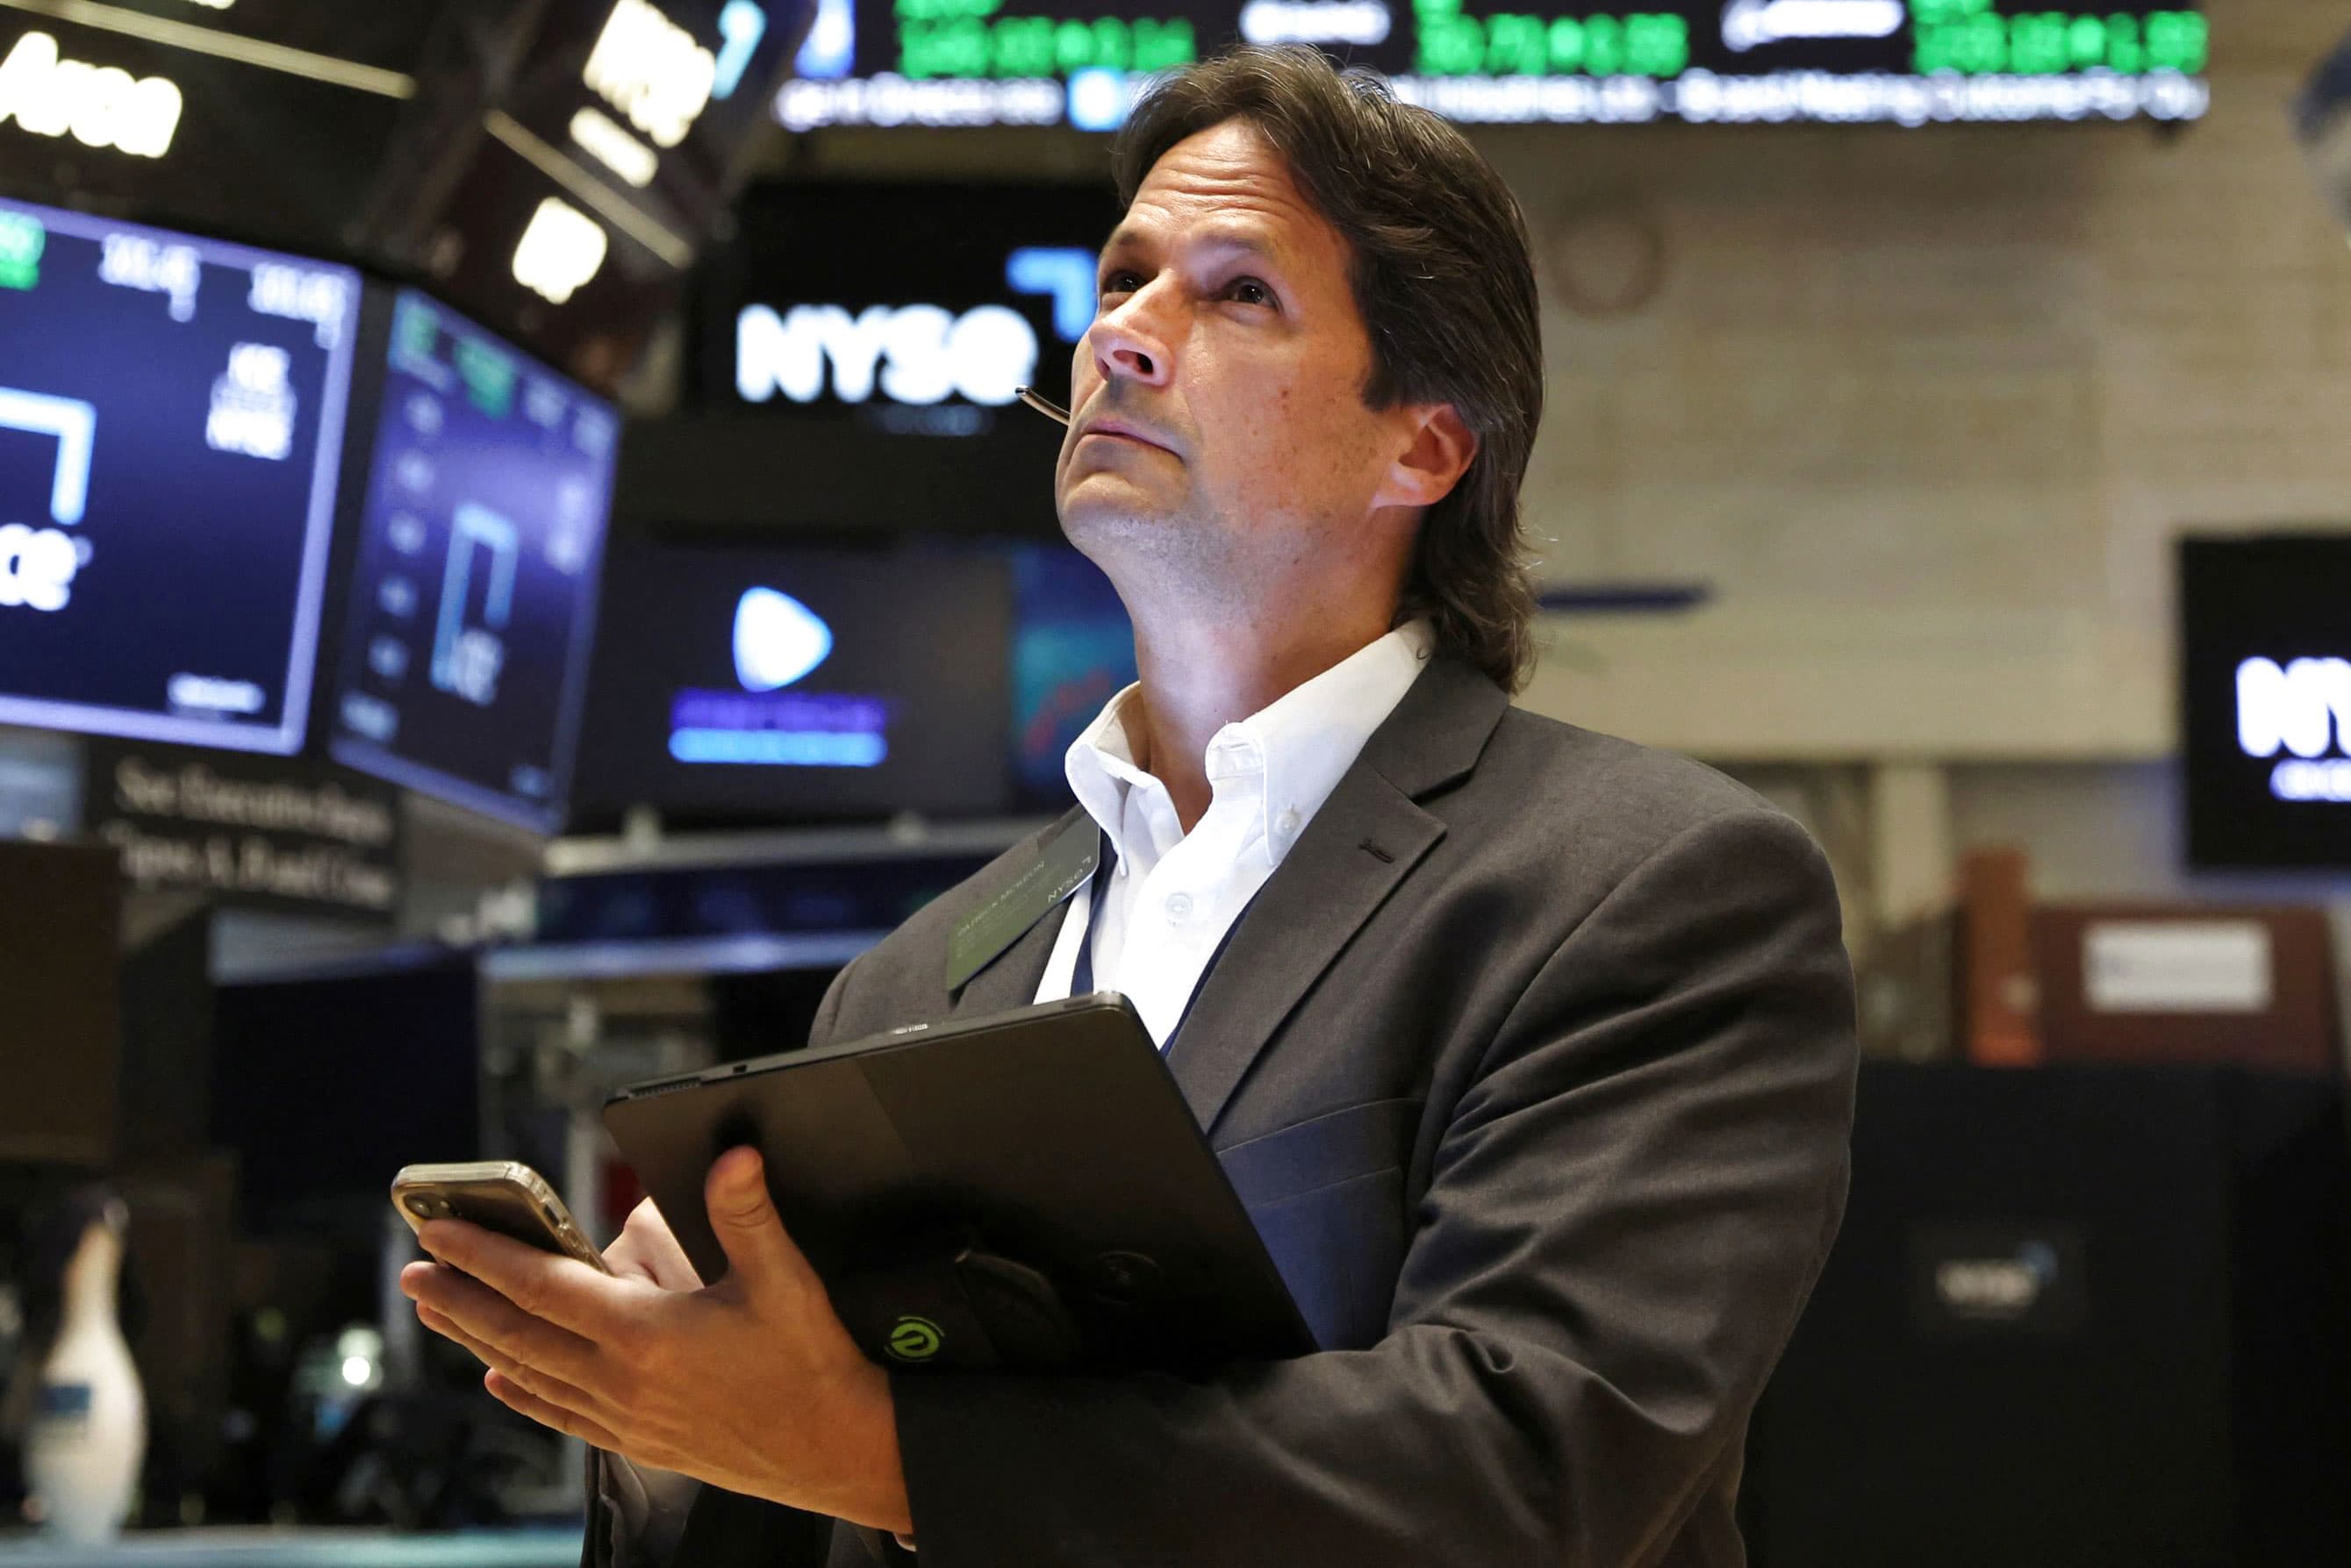 Aktien-Futures haben sich kaum verändert, da die Wall Street eine arbeitsreiche Gewinnwoche erwartet: Live-Updates